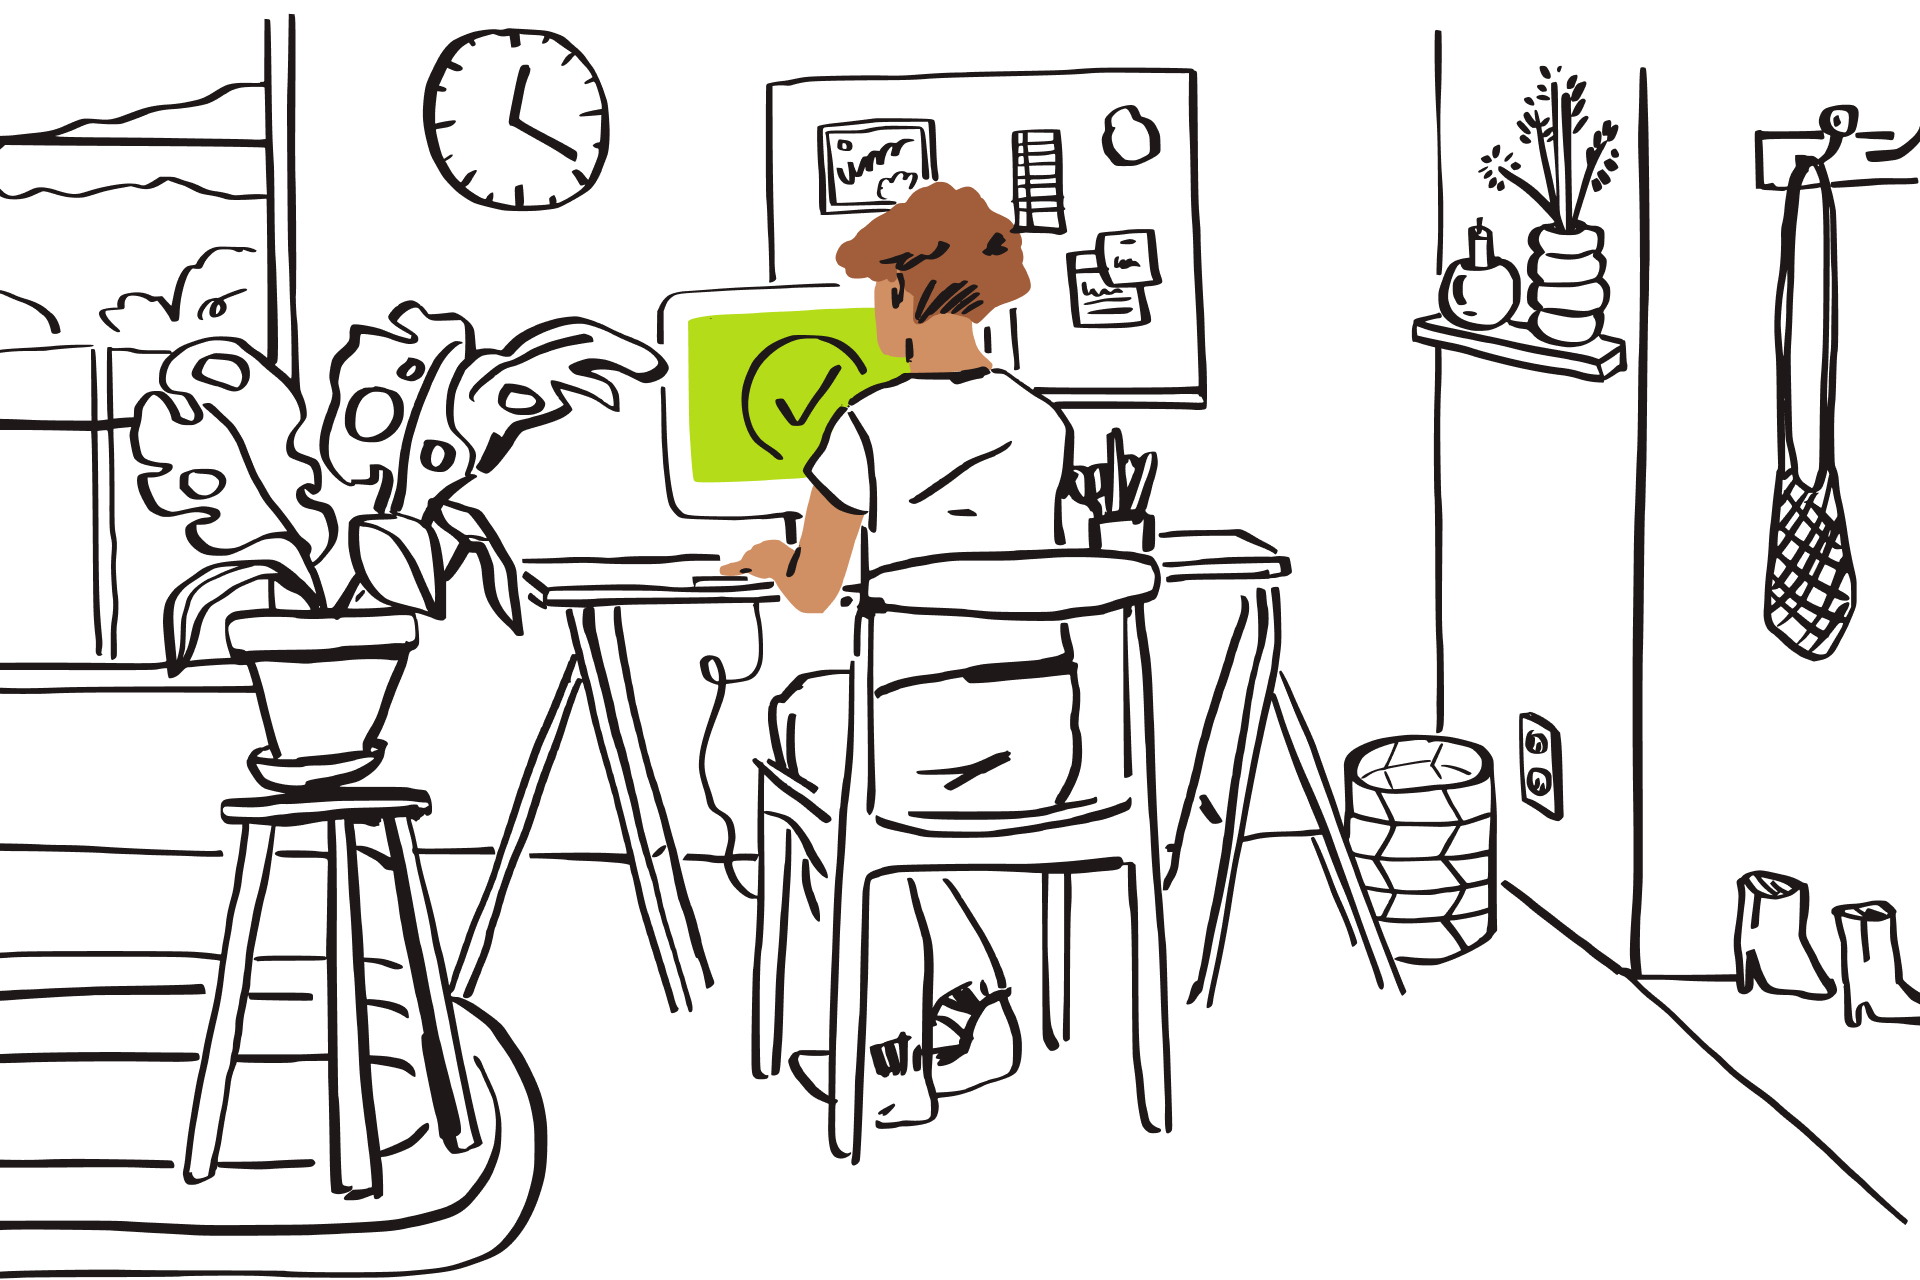 黑白線稿插圖：在房間內，一個人坐在電腦前打字，電腦上出現綠色畫面和核取記號